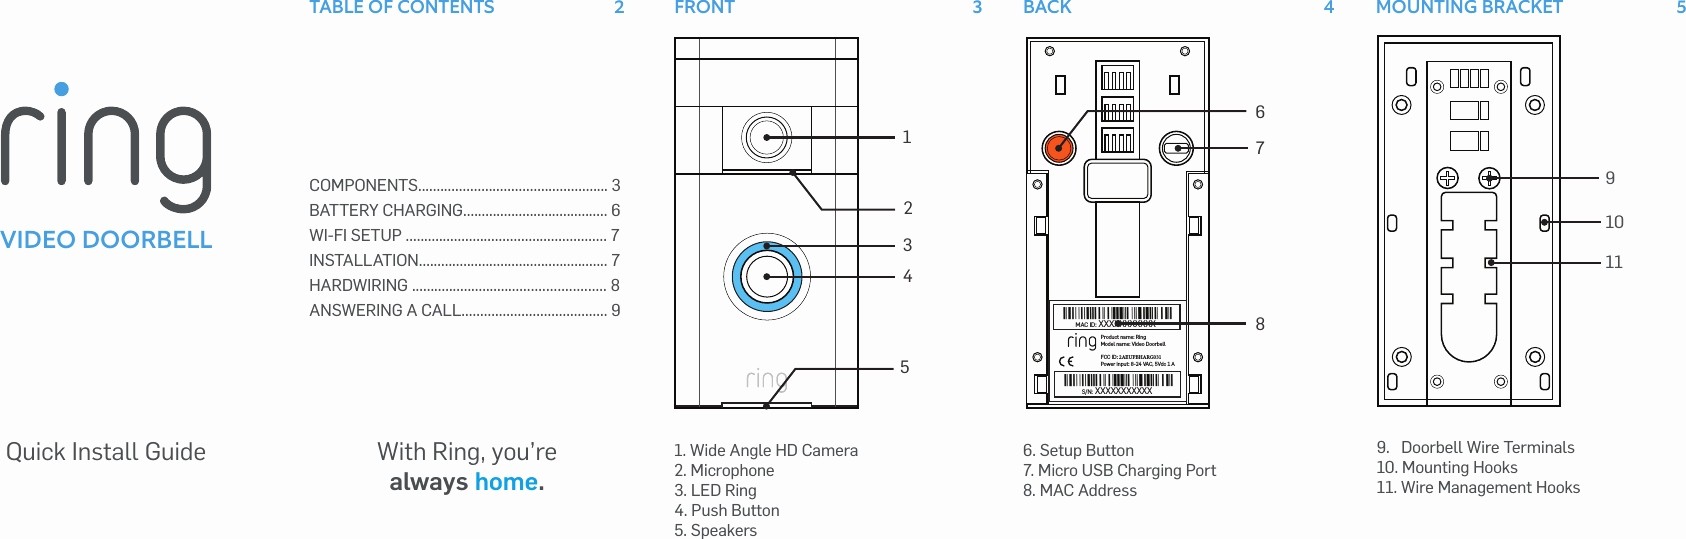 Wiring Diagram Nutone Doorbell Wiring Diagram Inspirational Wiring Doorbell Wiring Diagrams Pinterest